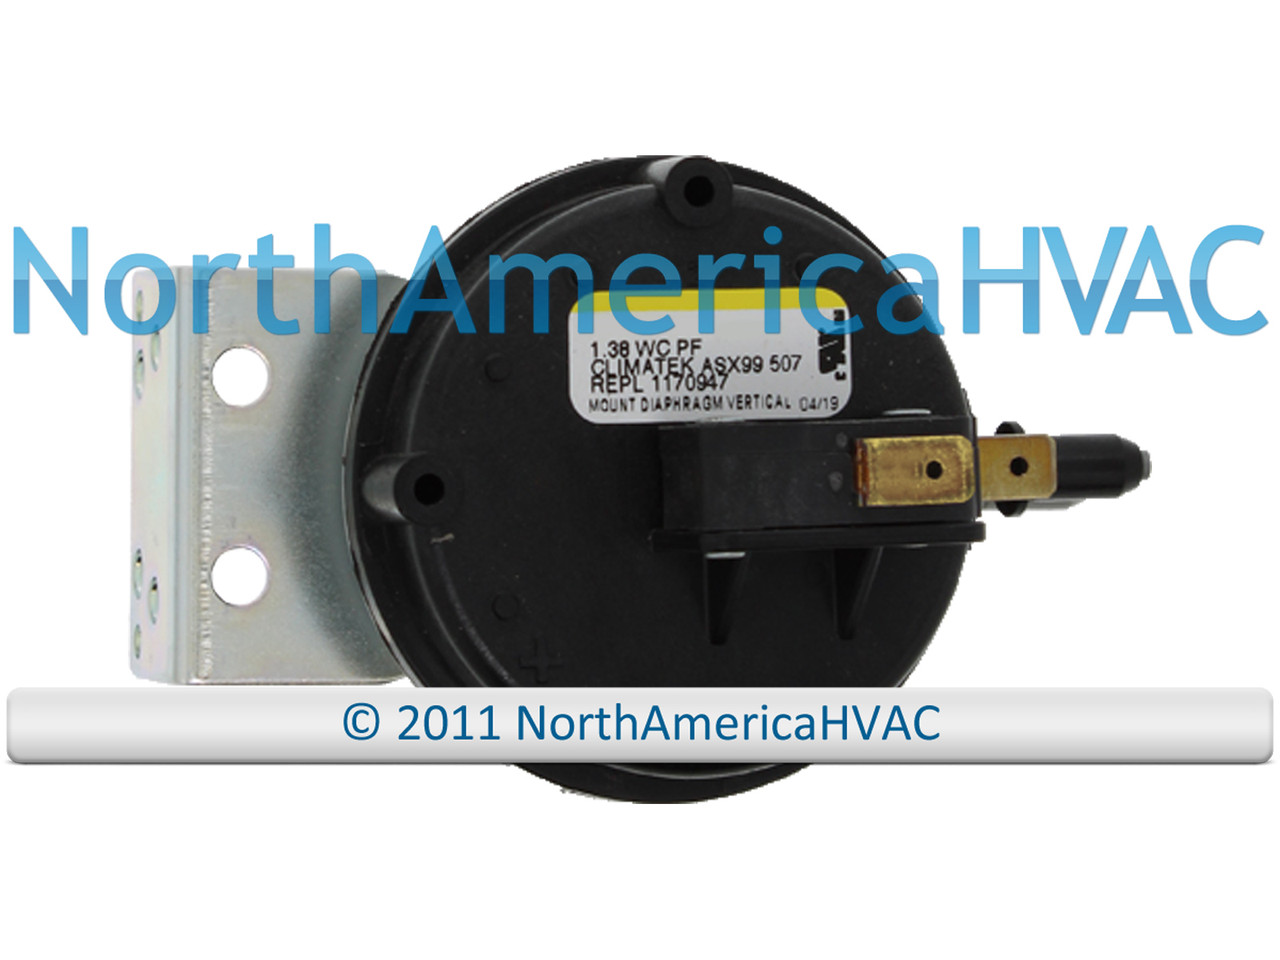 OEM ICP Heil Tempstar Furnace Air Pressure Switch Replaces 1008817  FS6033A-1719 1.38 WC - North America HVAC